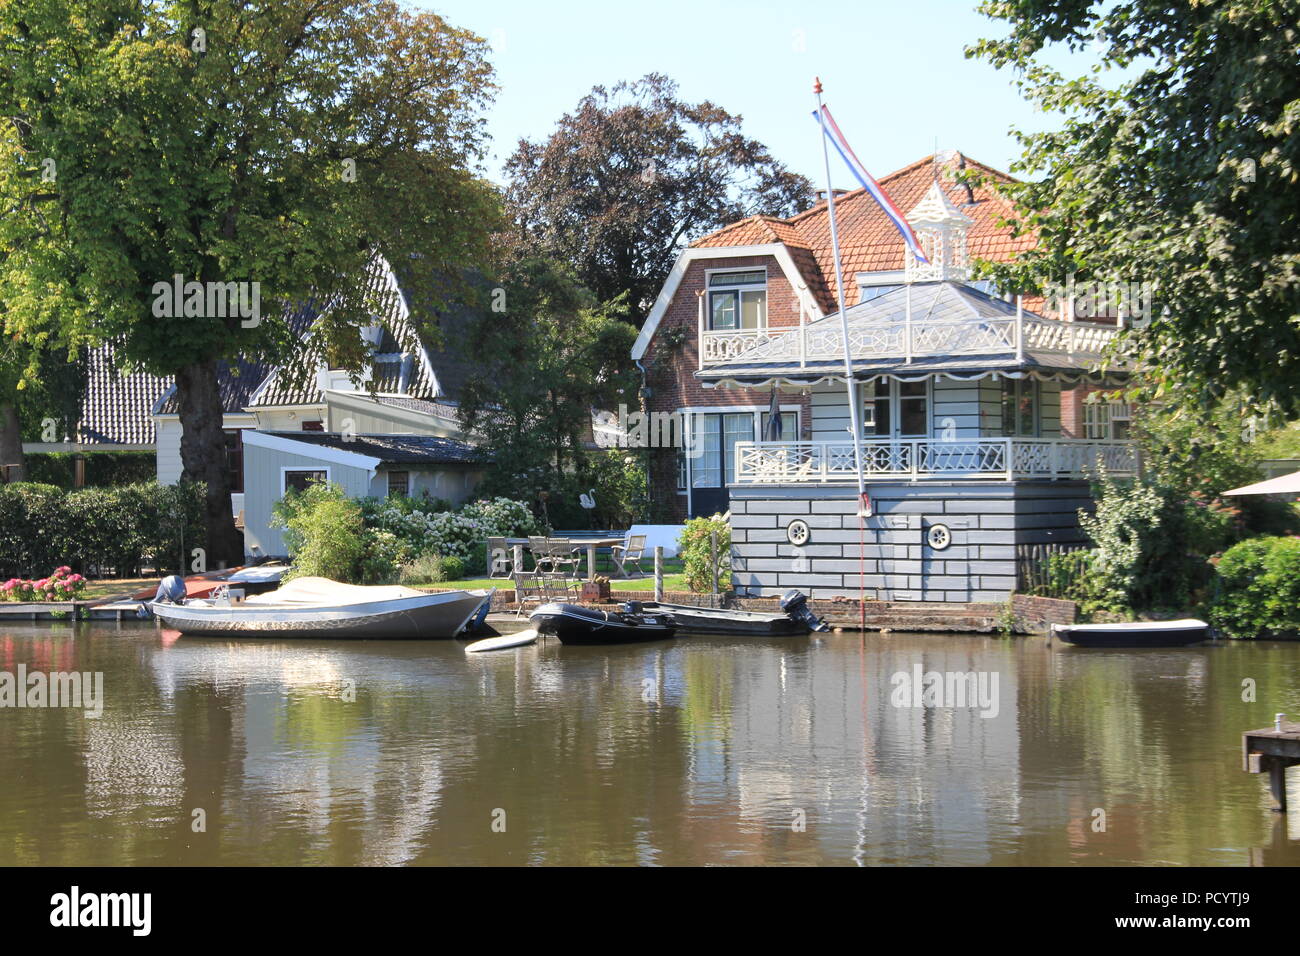 Broek in Waterland. The Netherlands Stock Photo